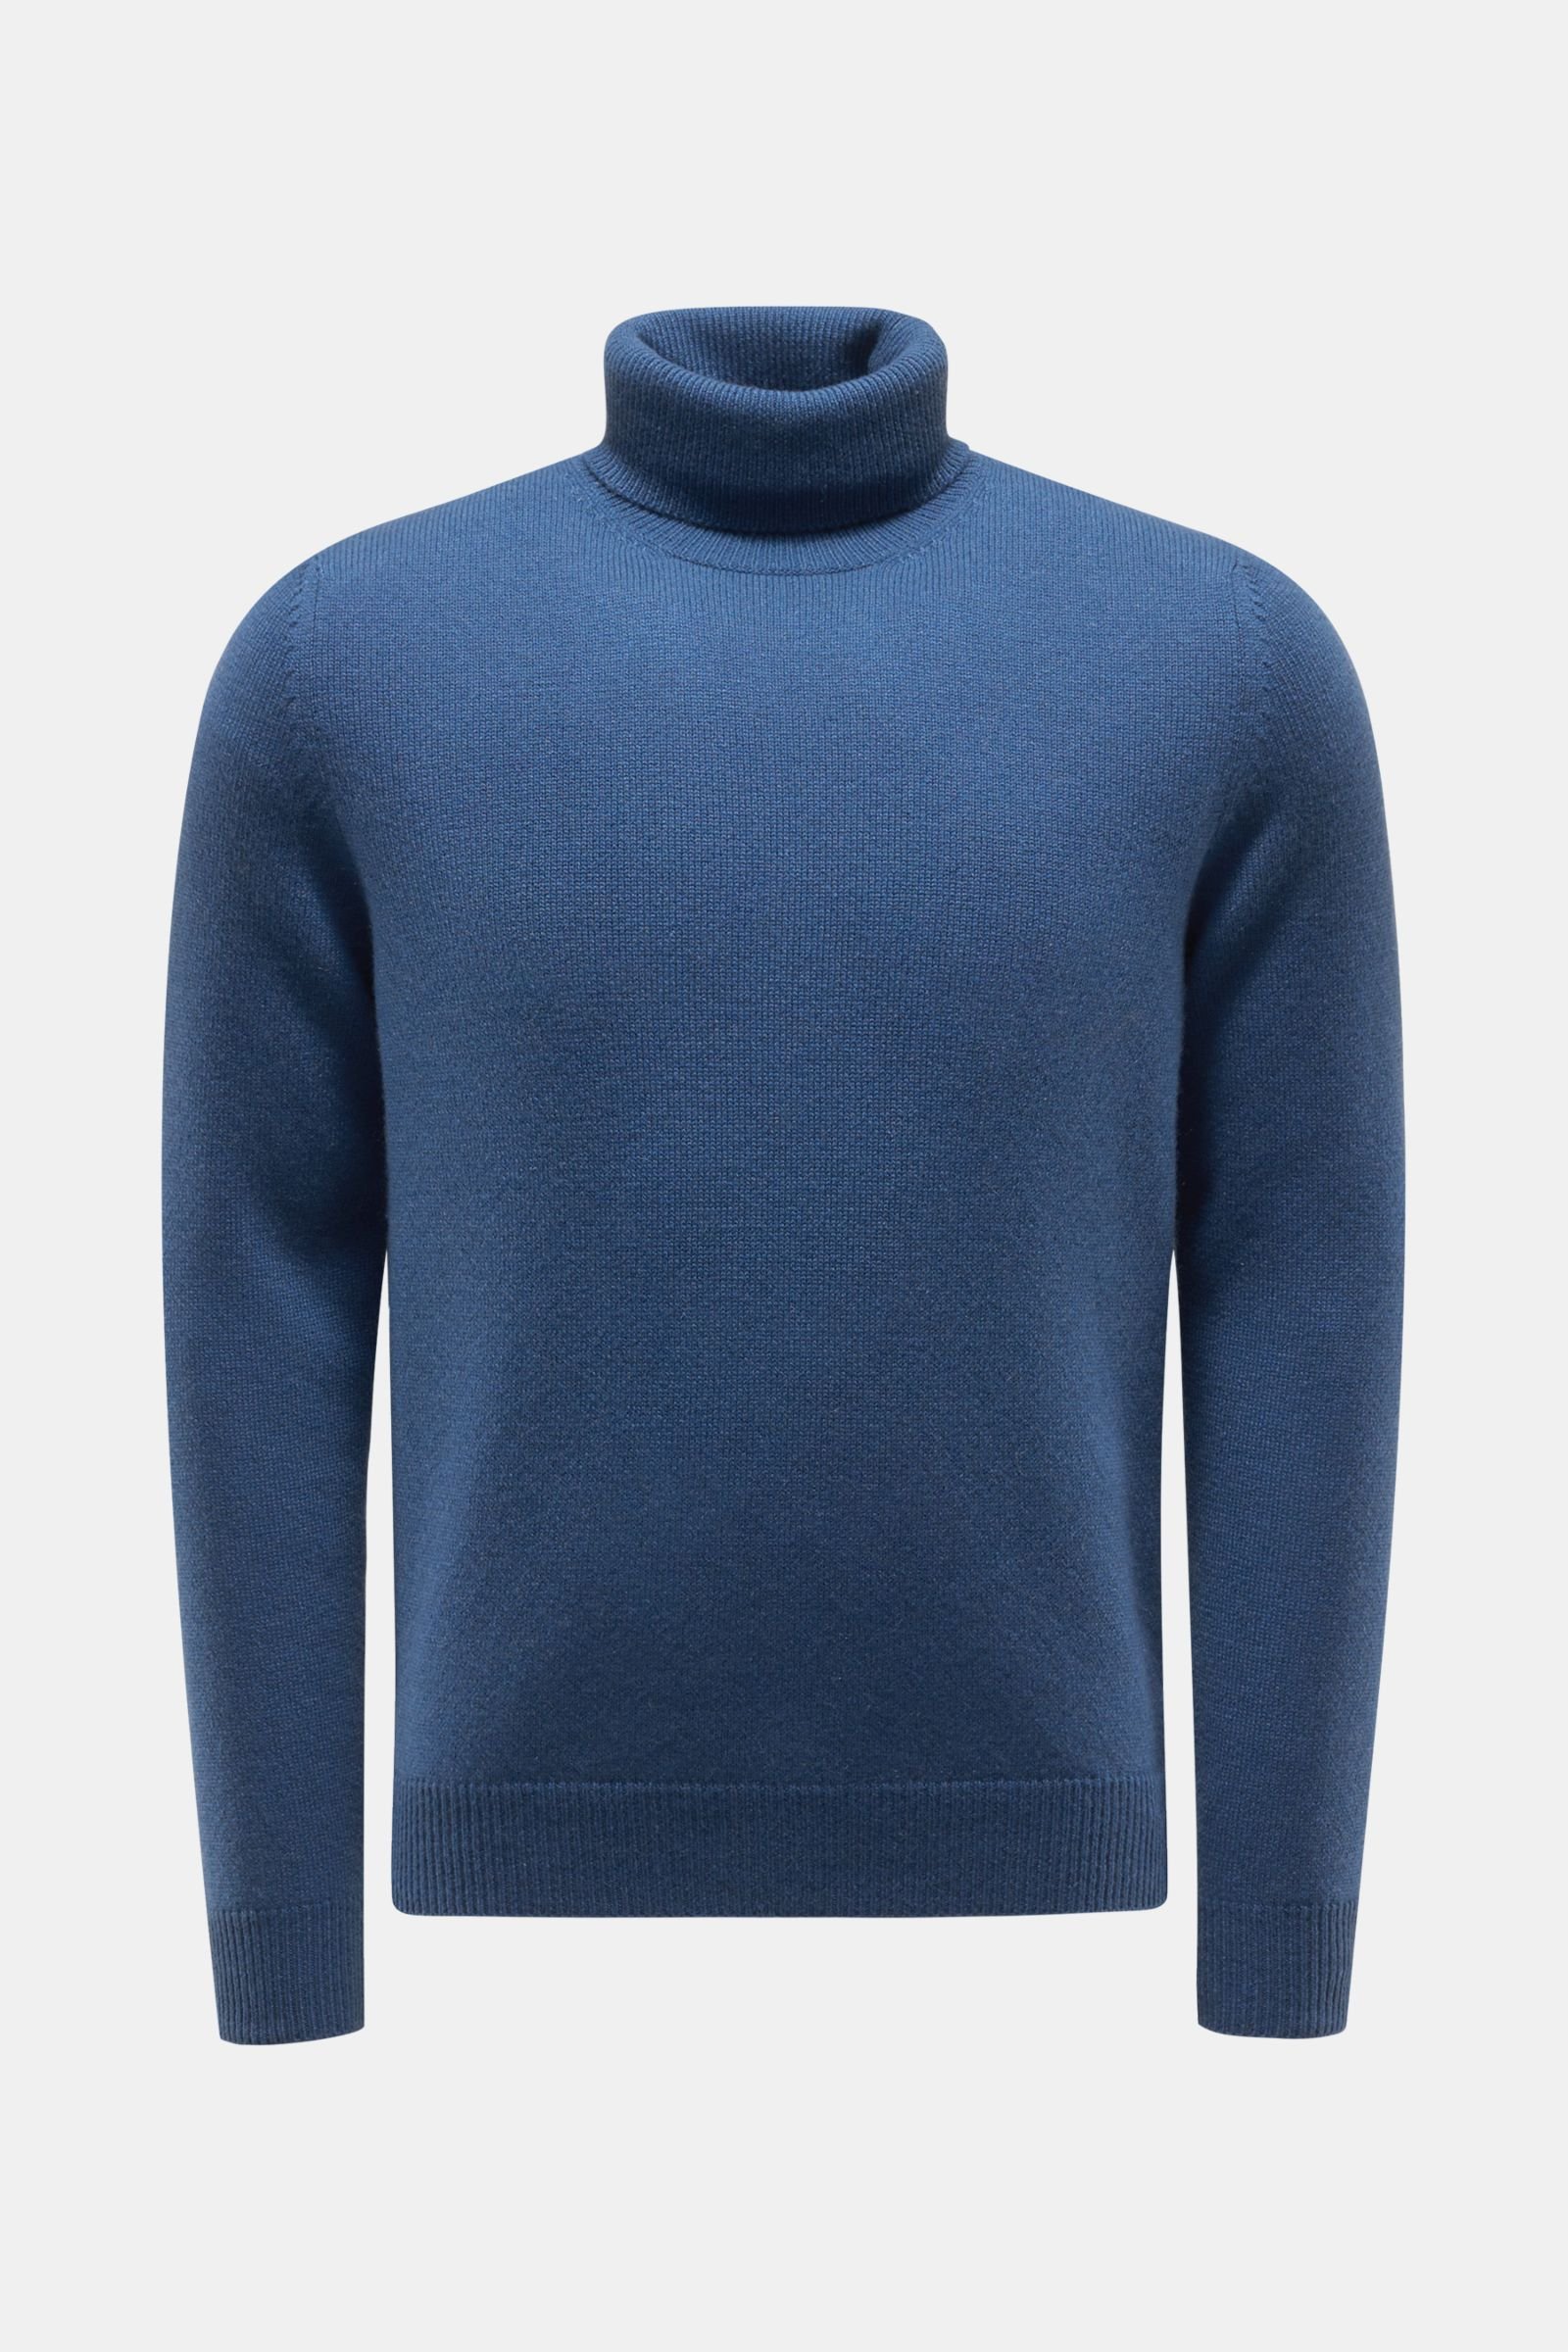 Cashmere turtleneck jumper grey-blue